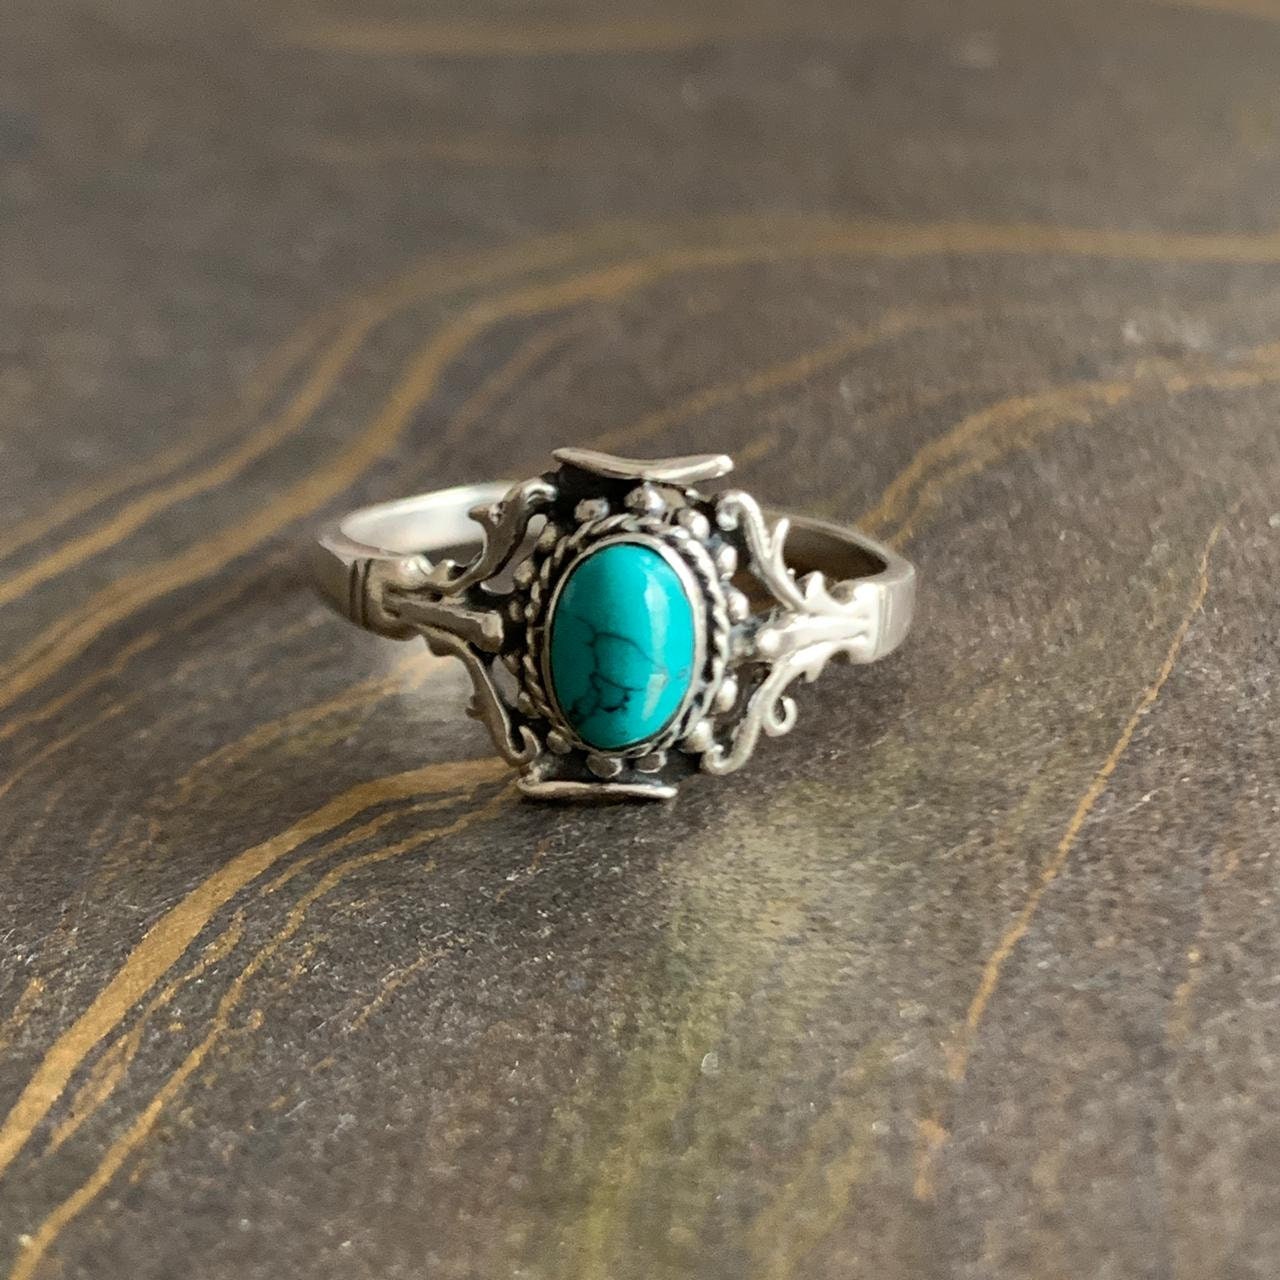 Designer Silver Turquoise Ring Amazing Turquoise Ring - Etsy UK